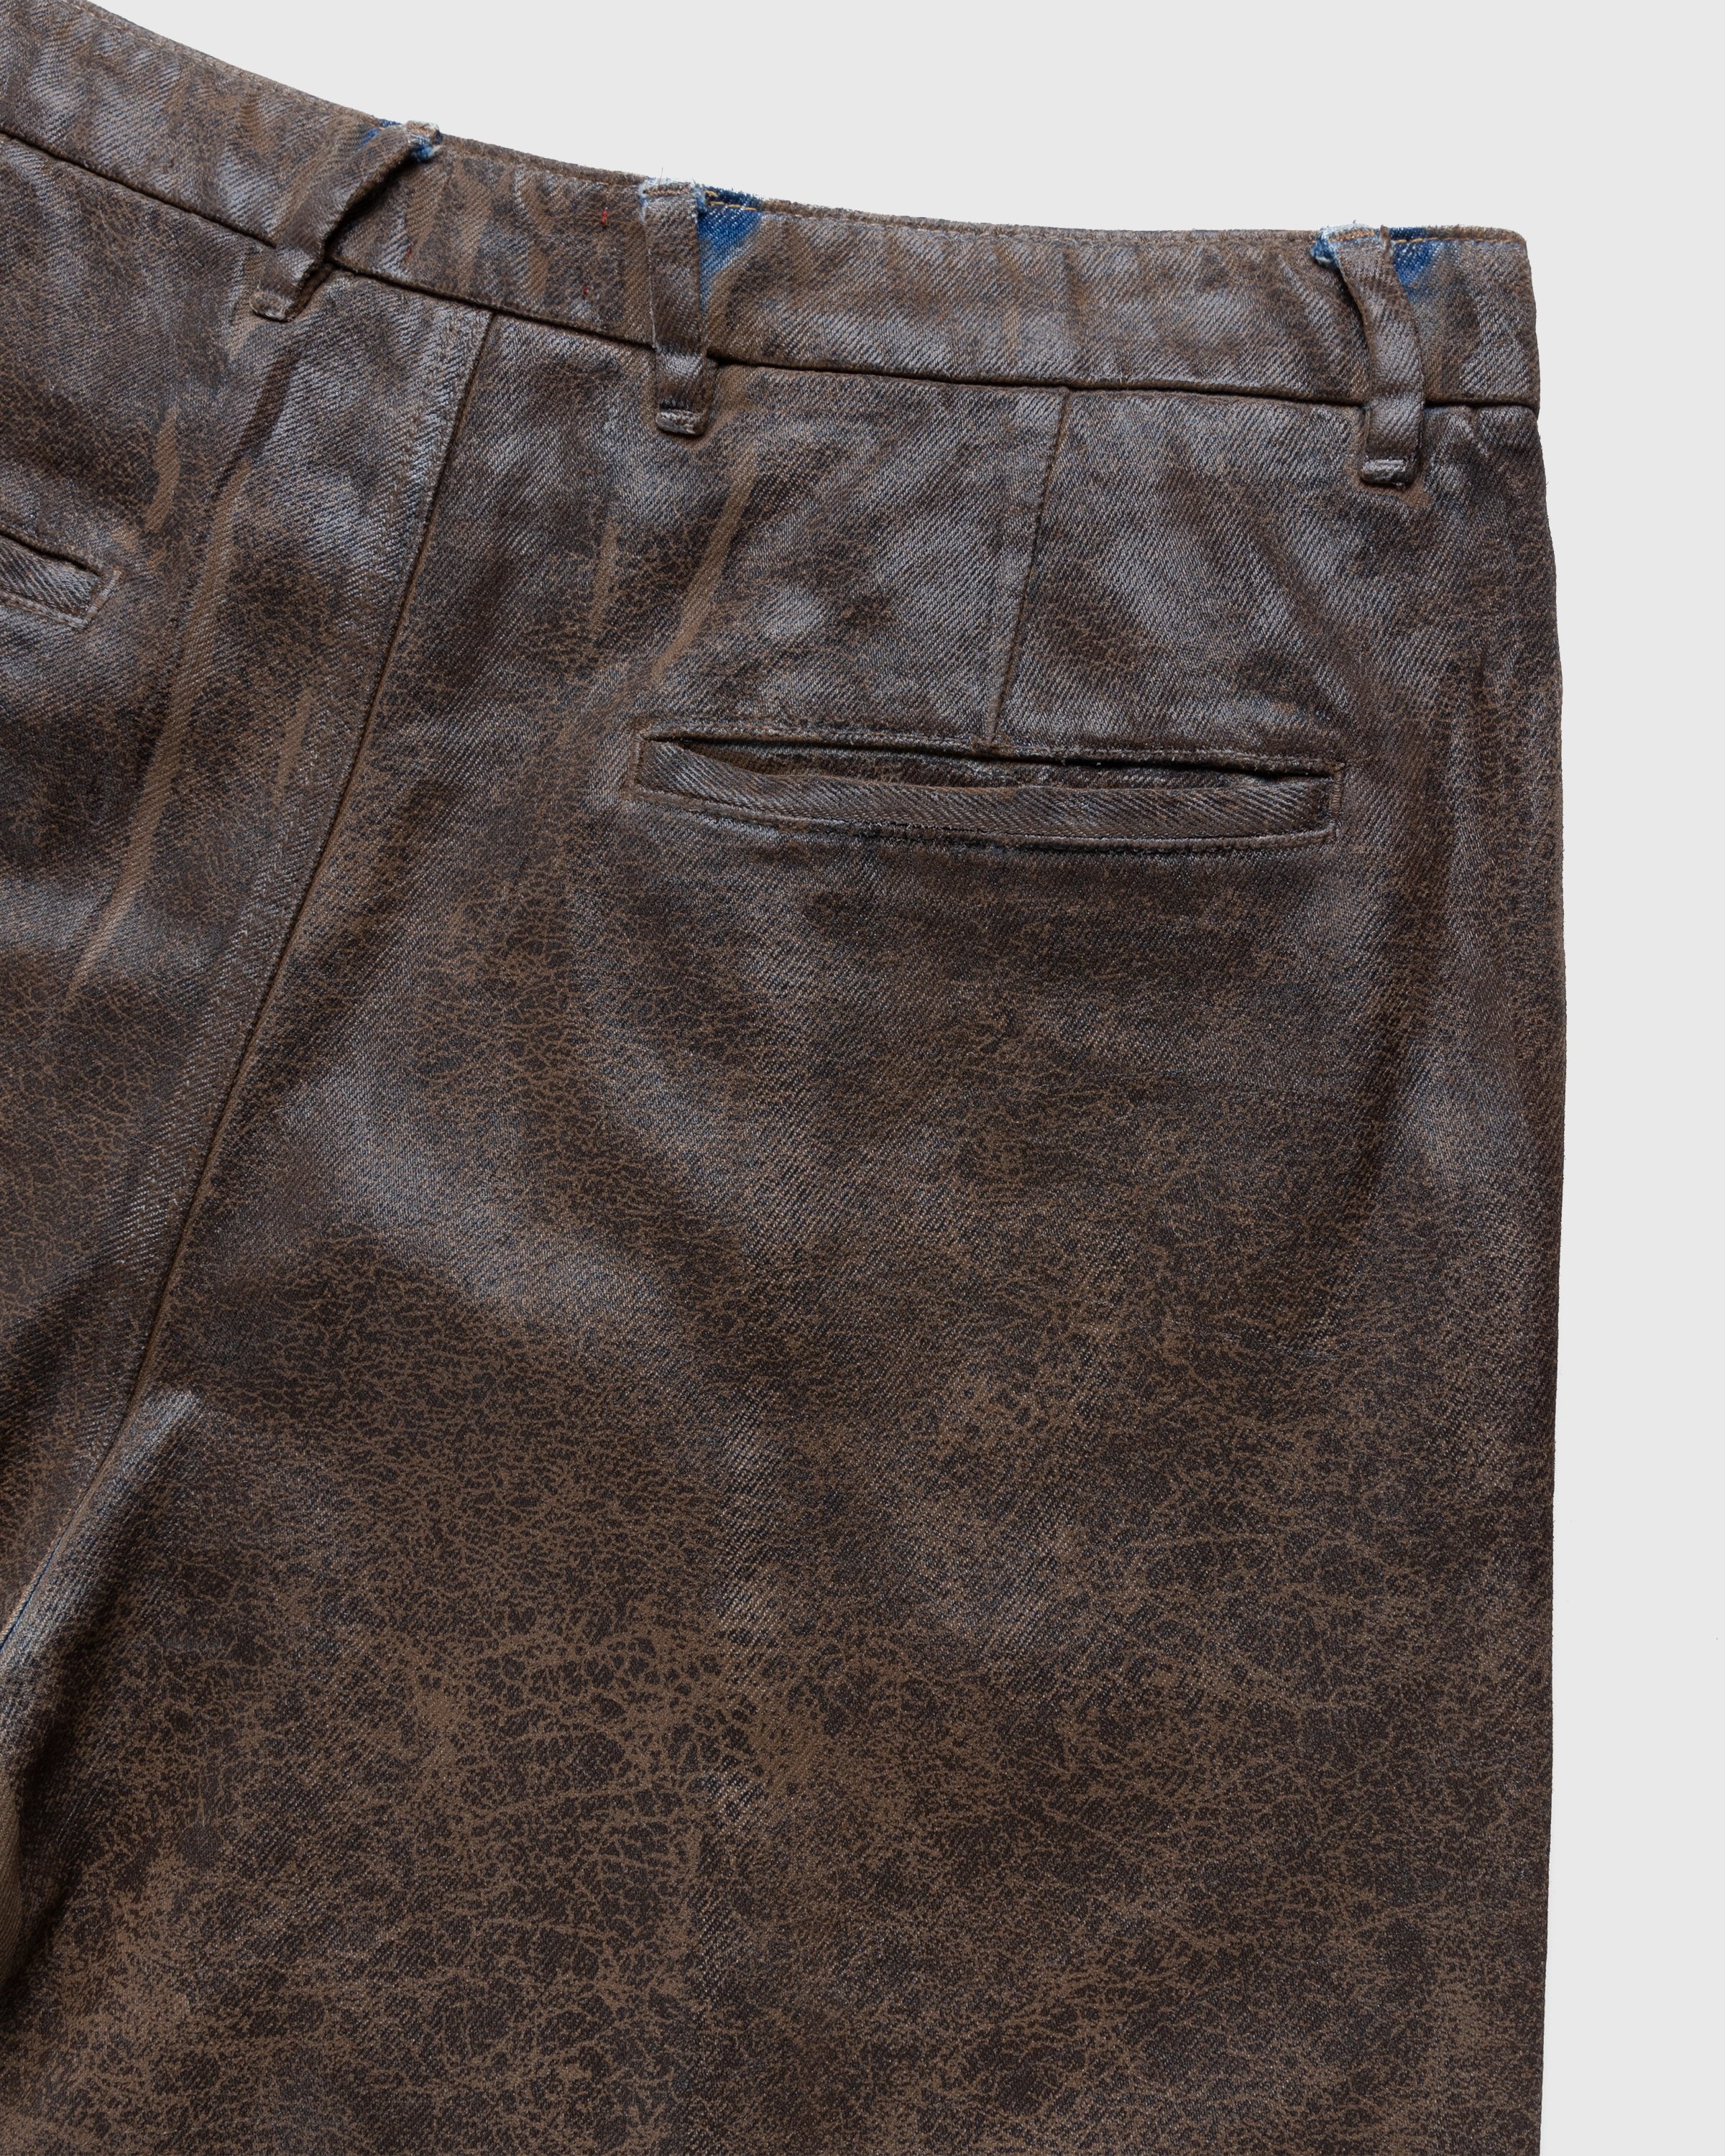 Diesel – Chino Work Jeans Aztec - Denim - Beige - Image 5